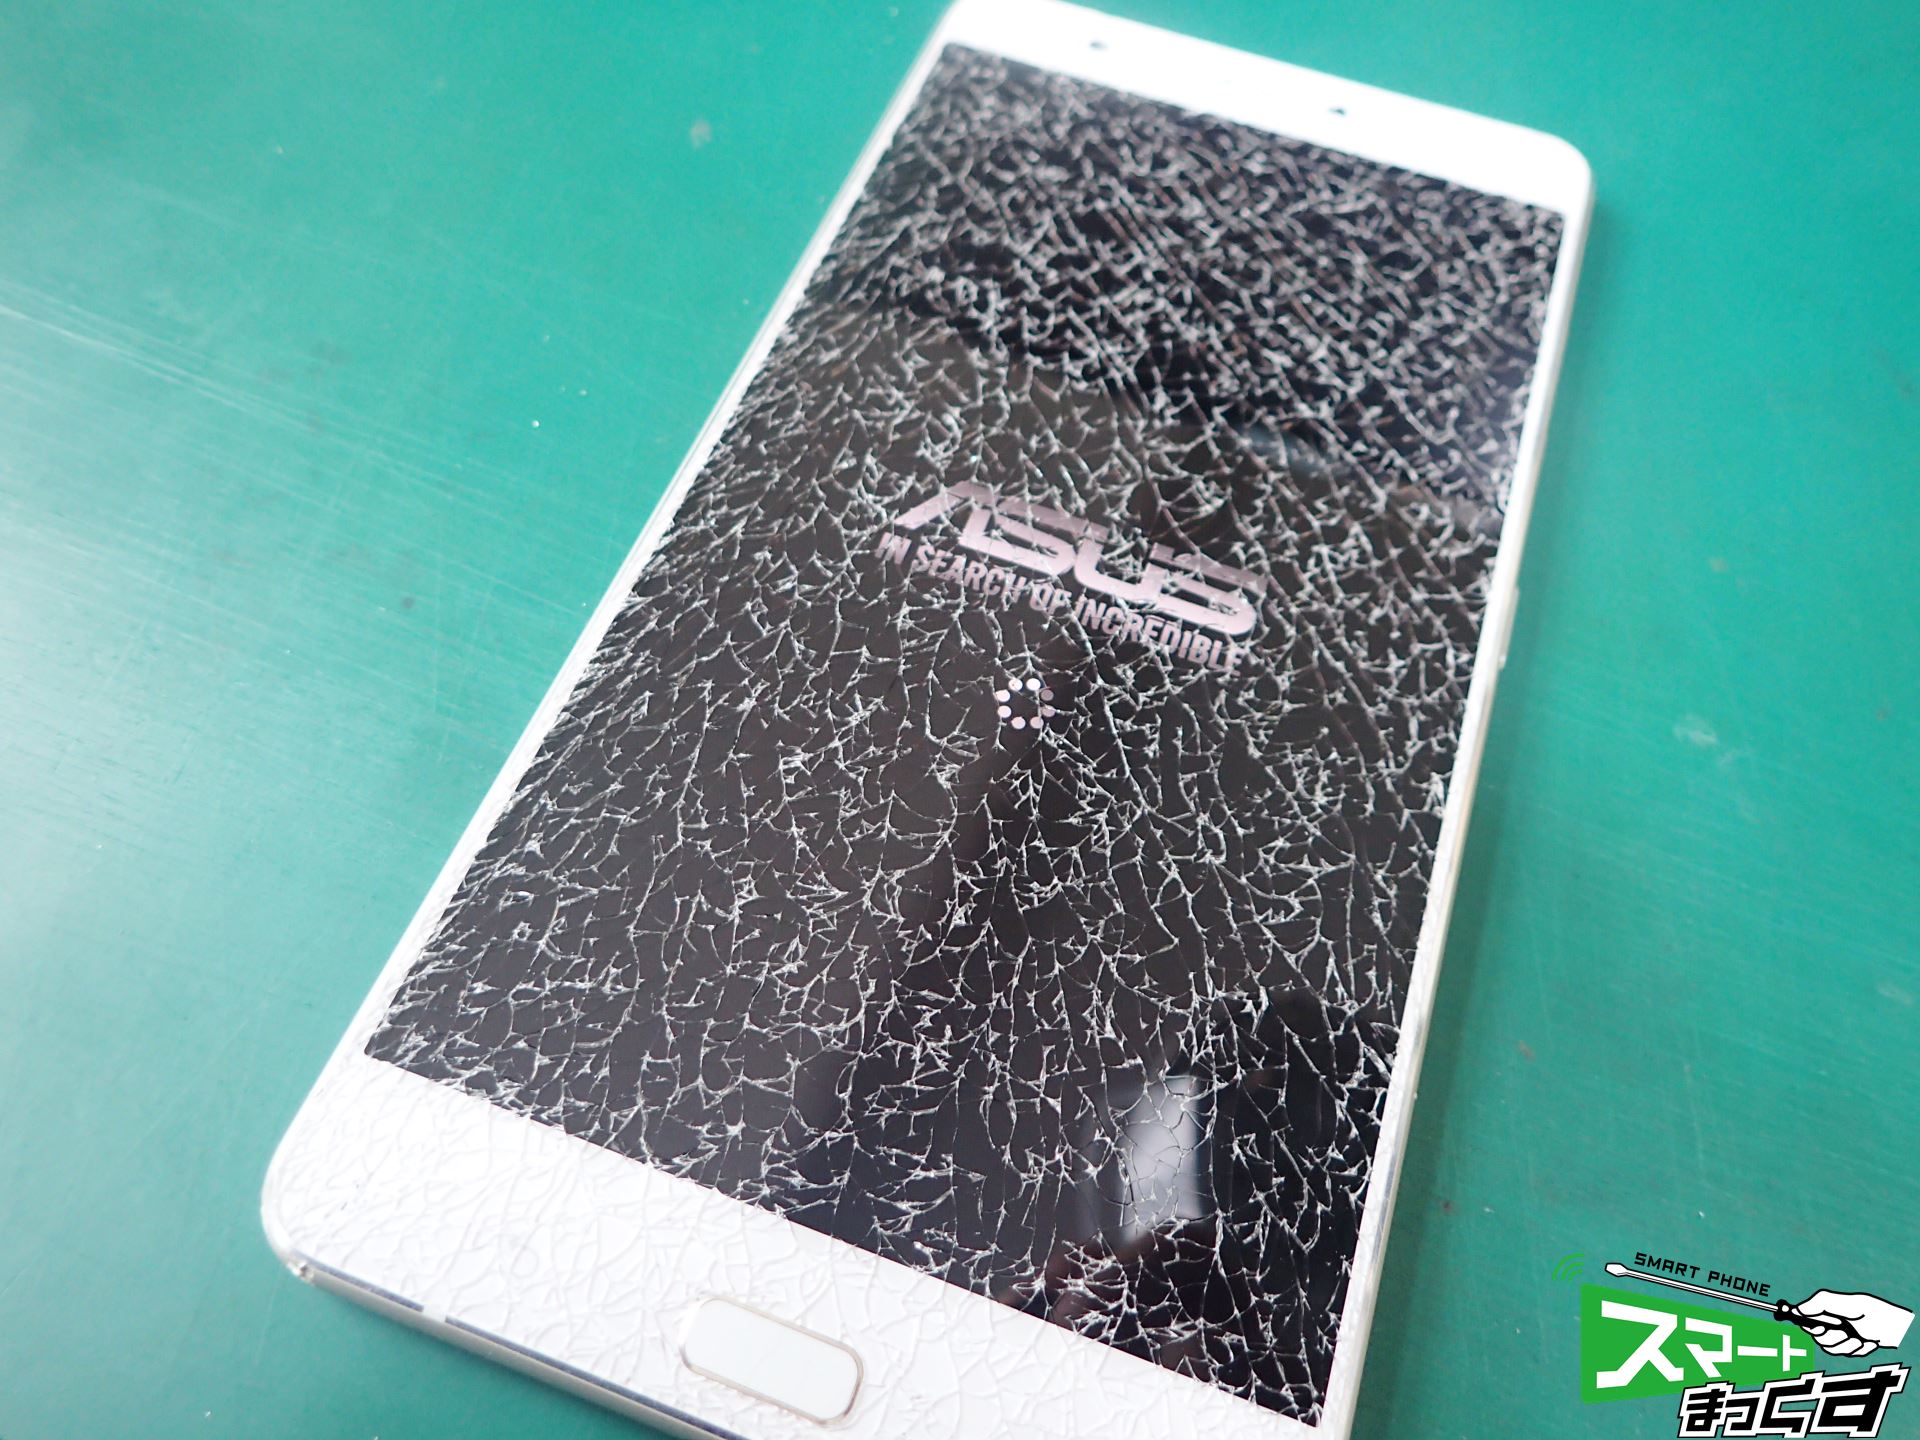 Asus Zenfone3 Ultra Zu680kl 画面割れ即日修理 写真付きで修理解説 東京 大阪 滋賀のスマートフォン修理 スマートまっくす 全国対応